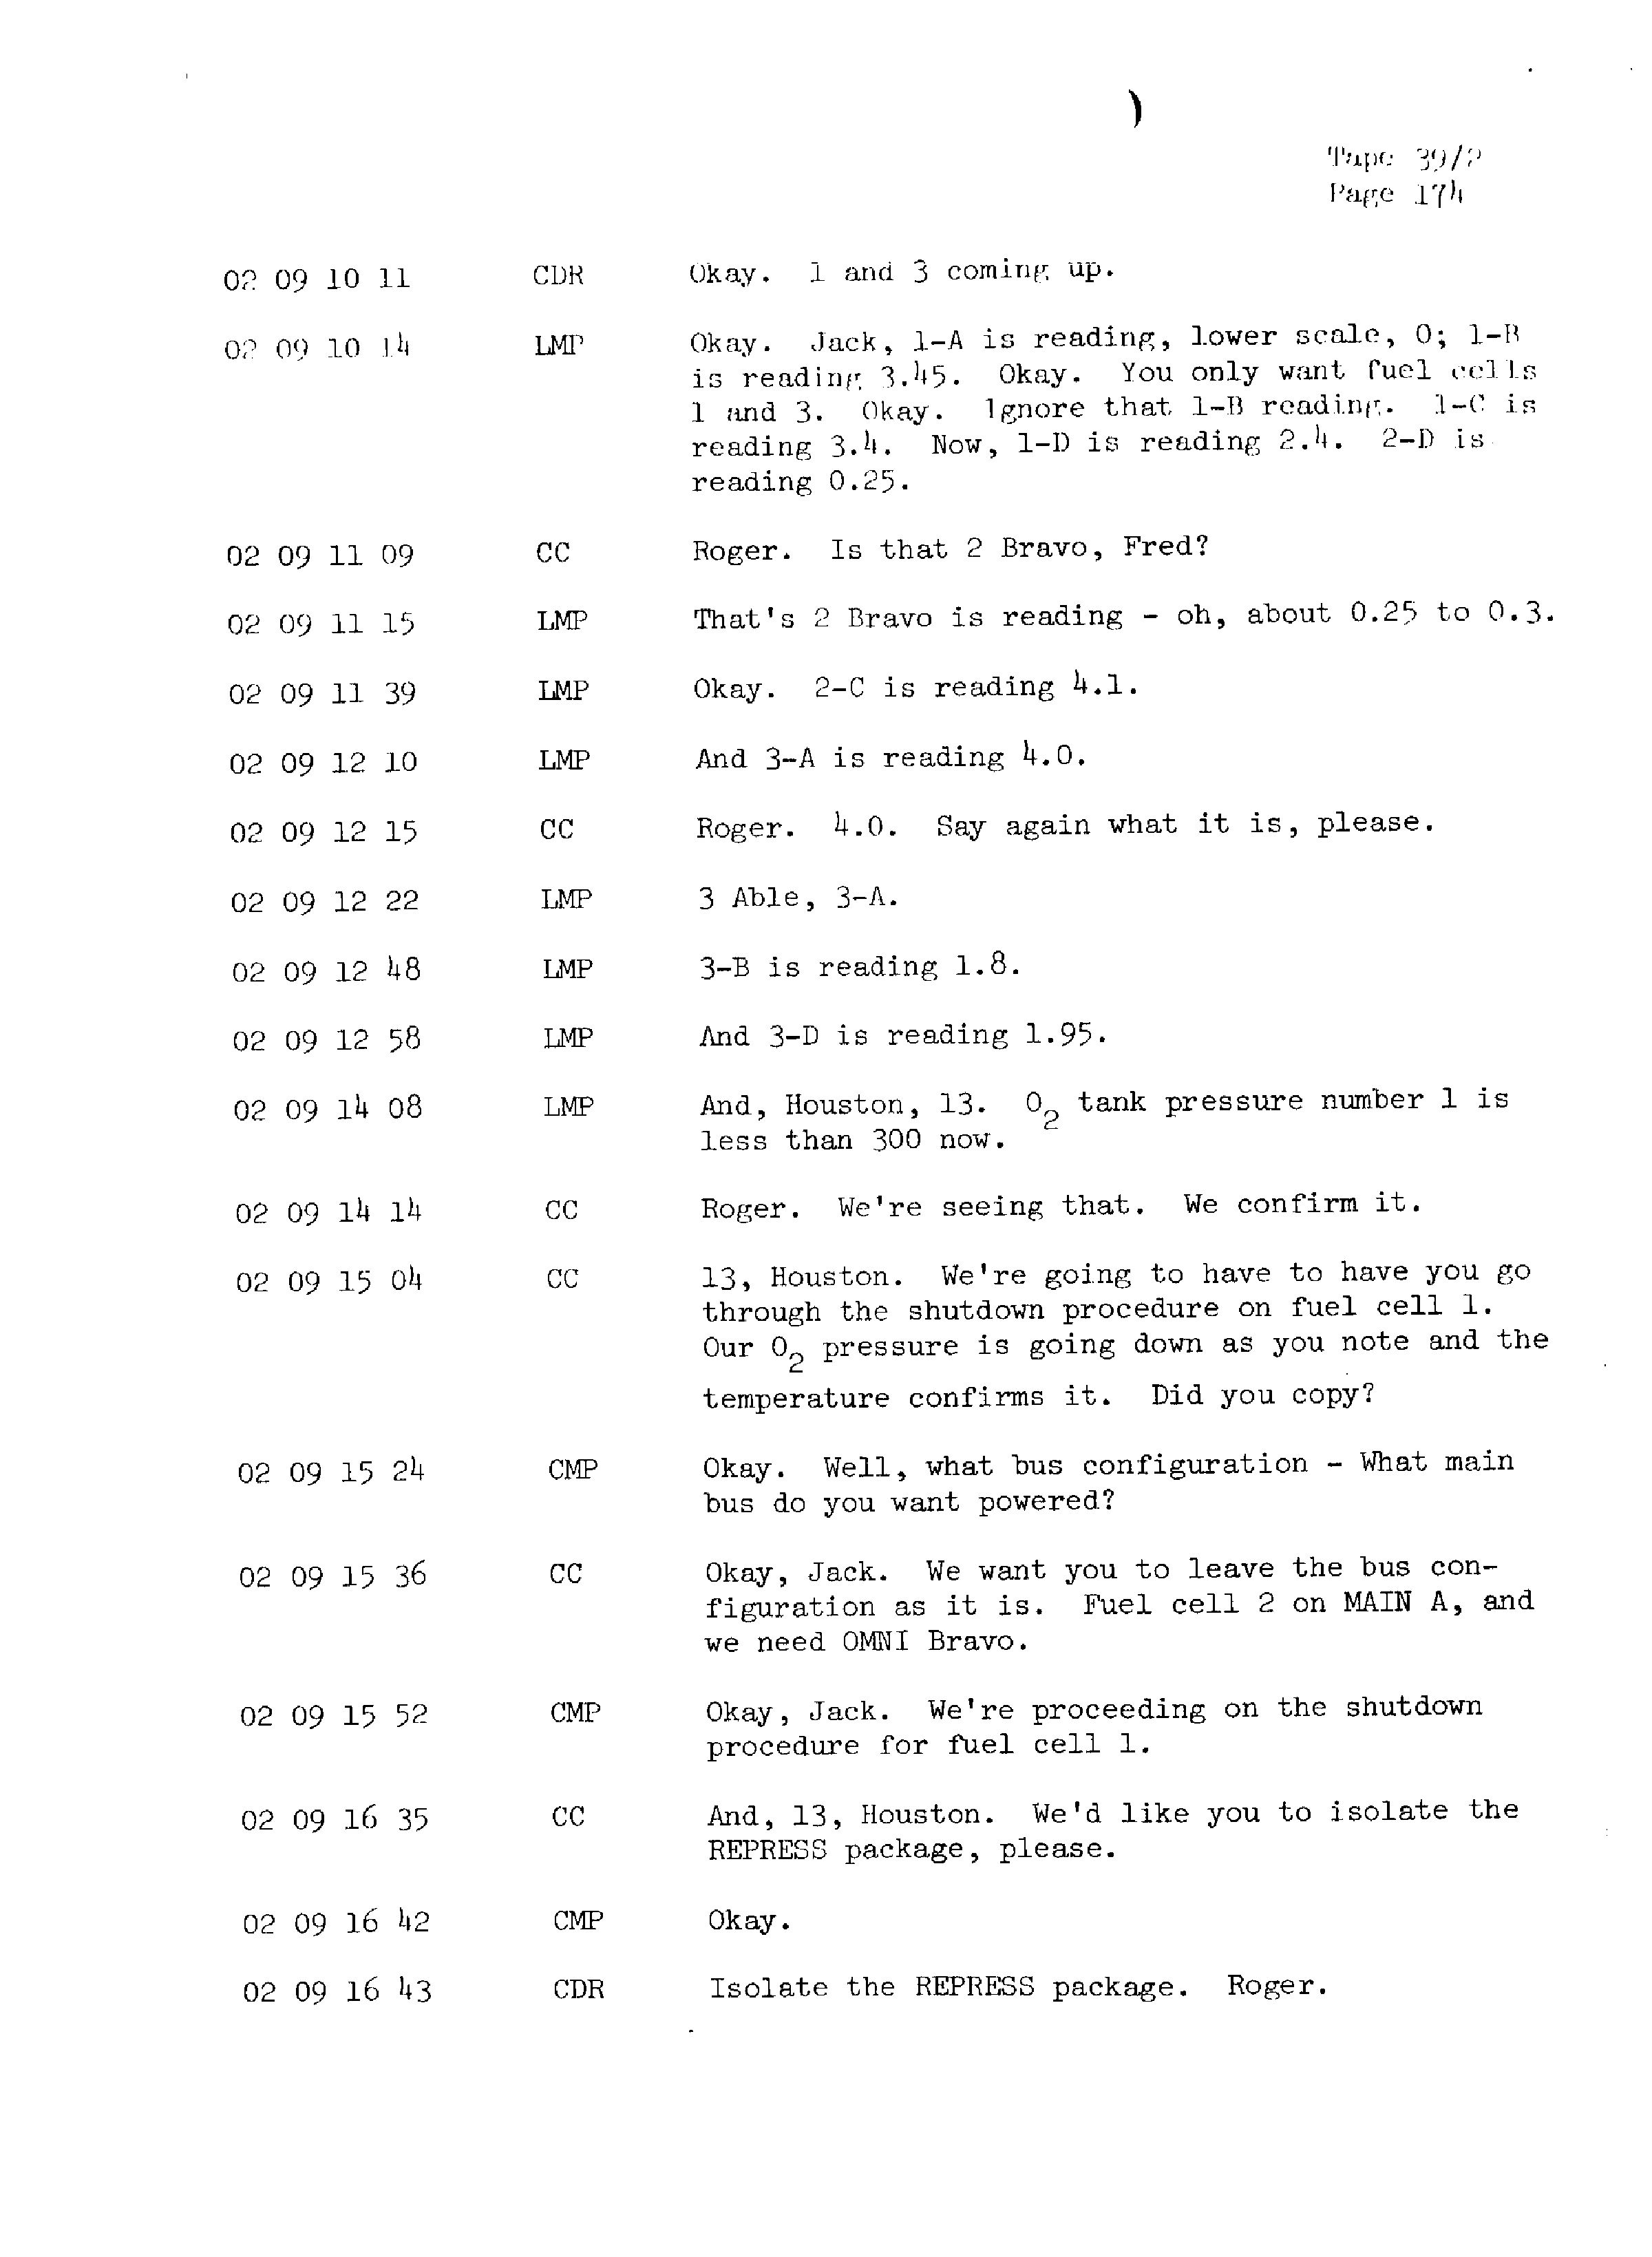 Page 181 of Apollo 13’s original transcript